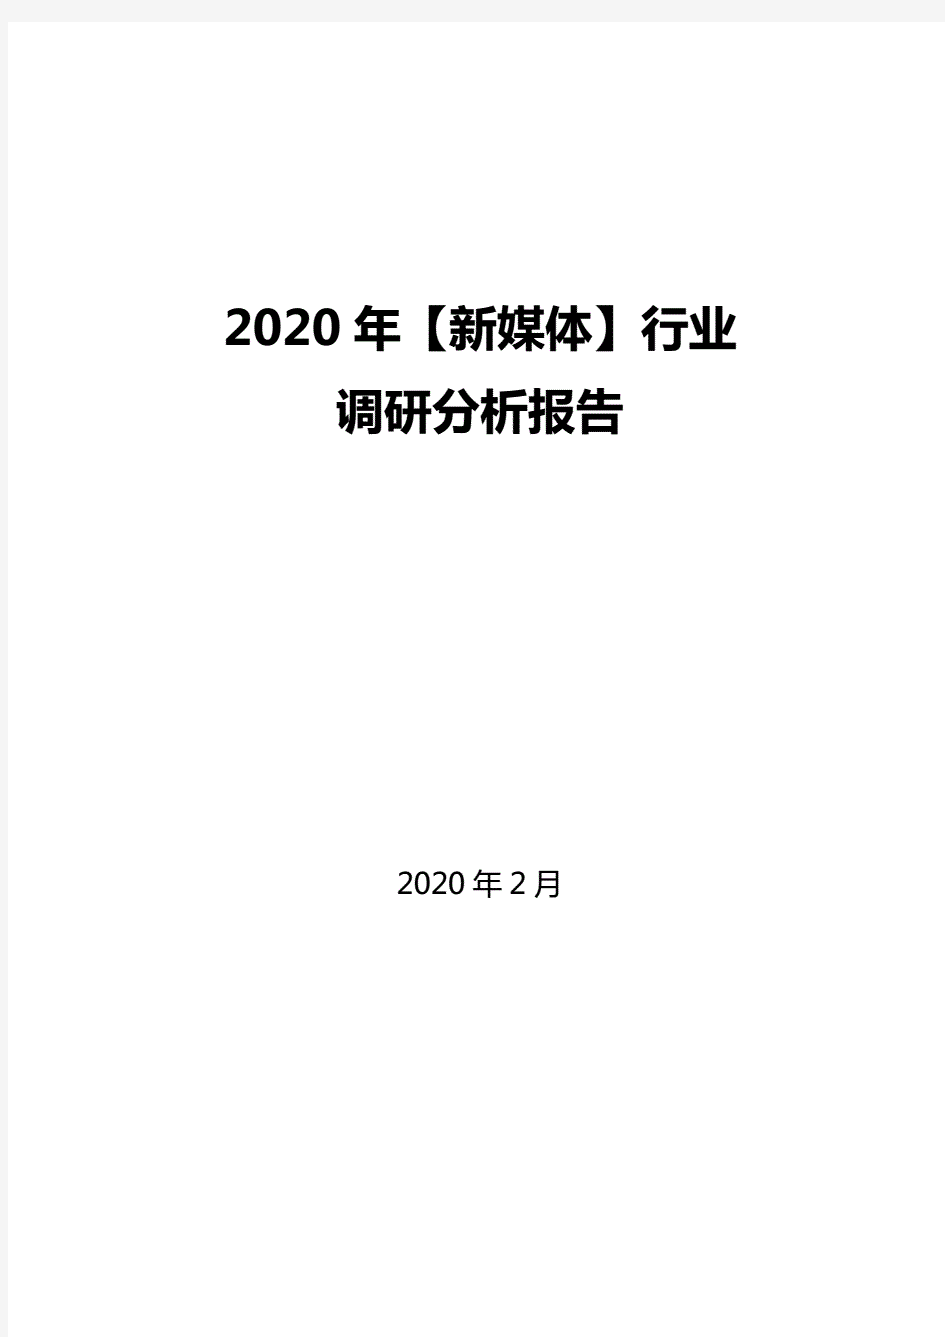 2020年【新媒体】行业调研分析报告.